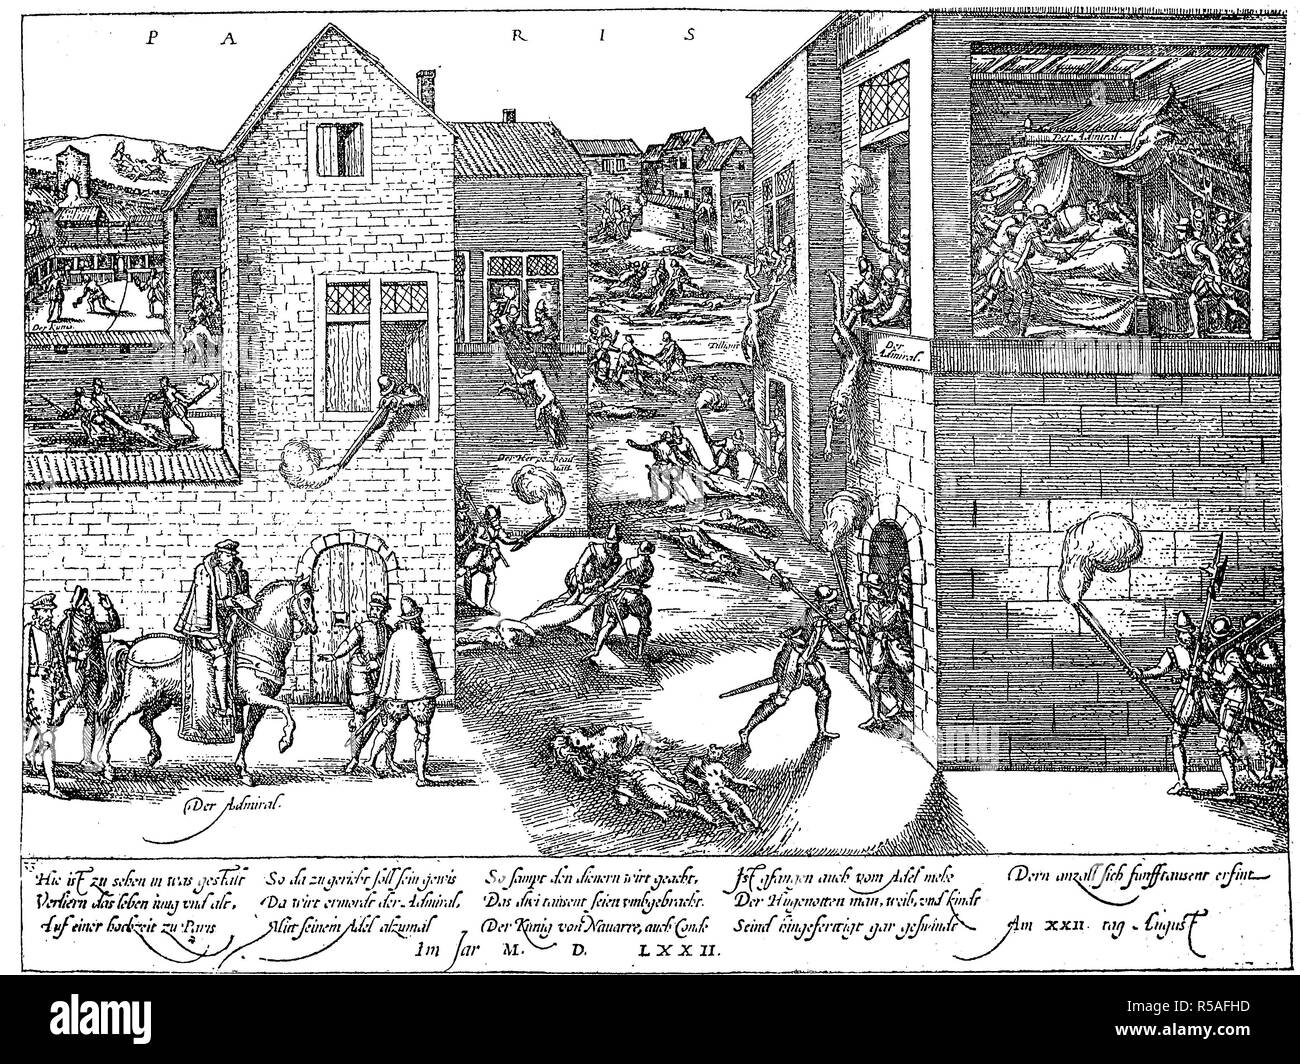 San Bartholomews Noche, pogromo de protestantes franceses, los hugonotes, que tuvo lugar en la noche del 23 al 24 de agosto, 1572 Foto de stock